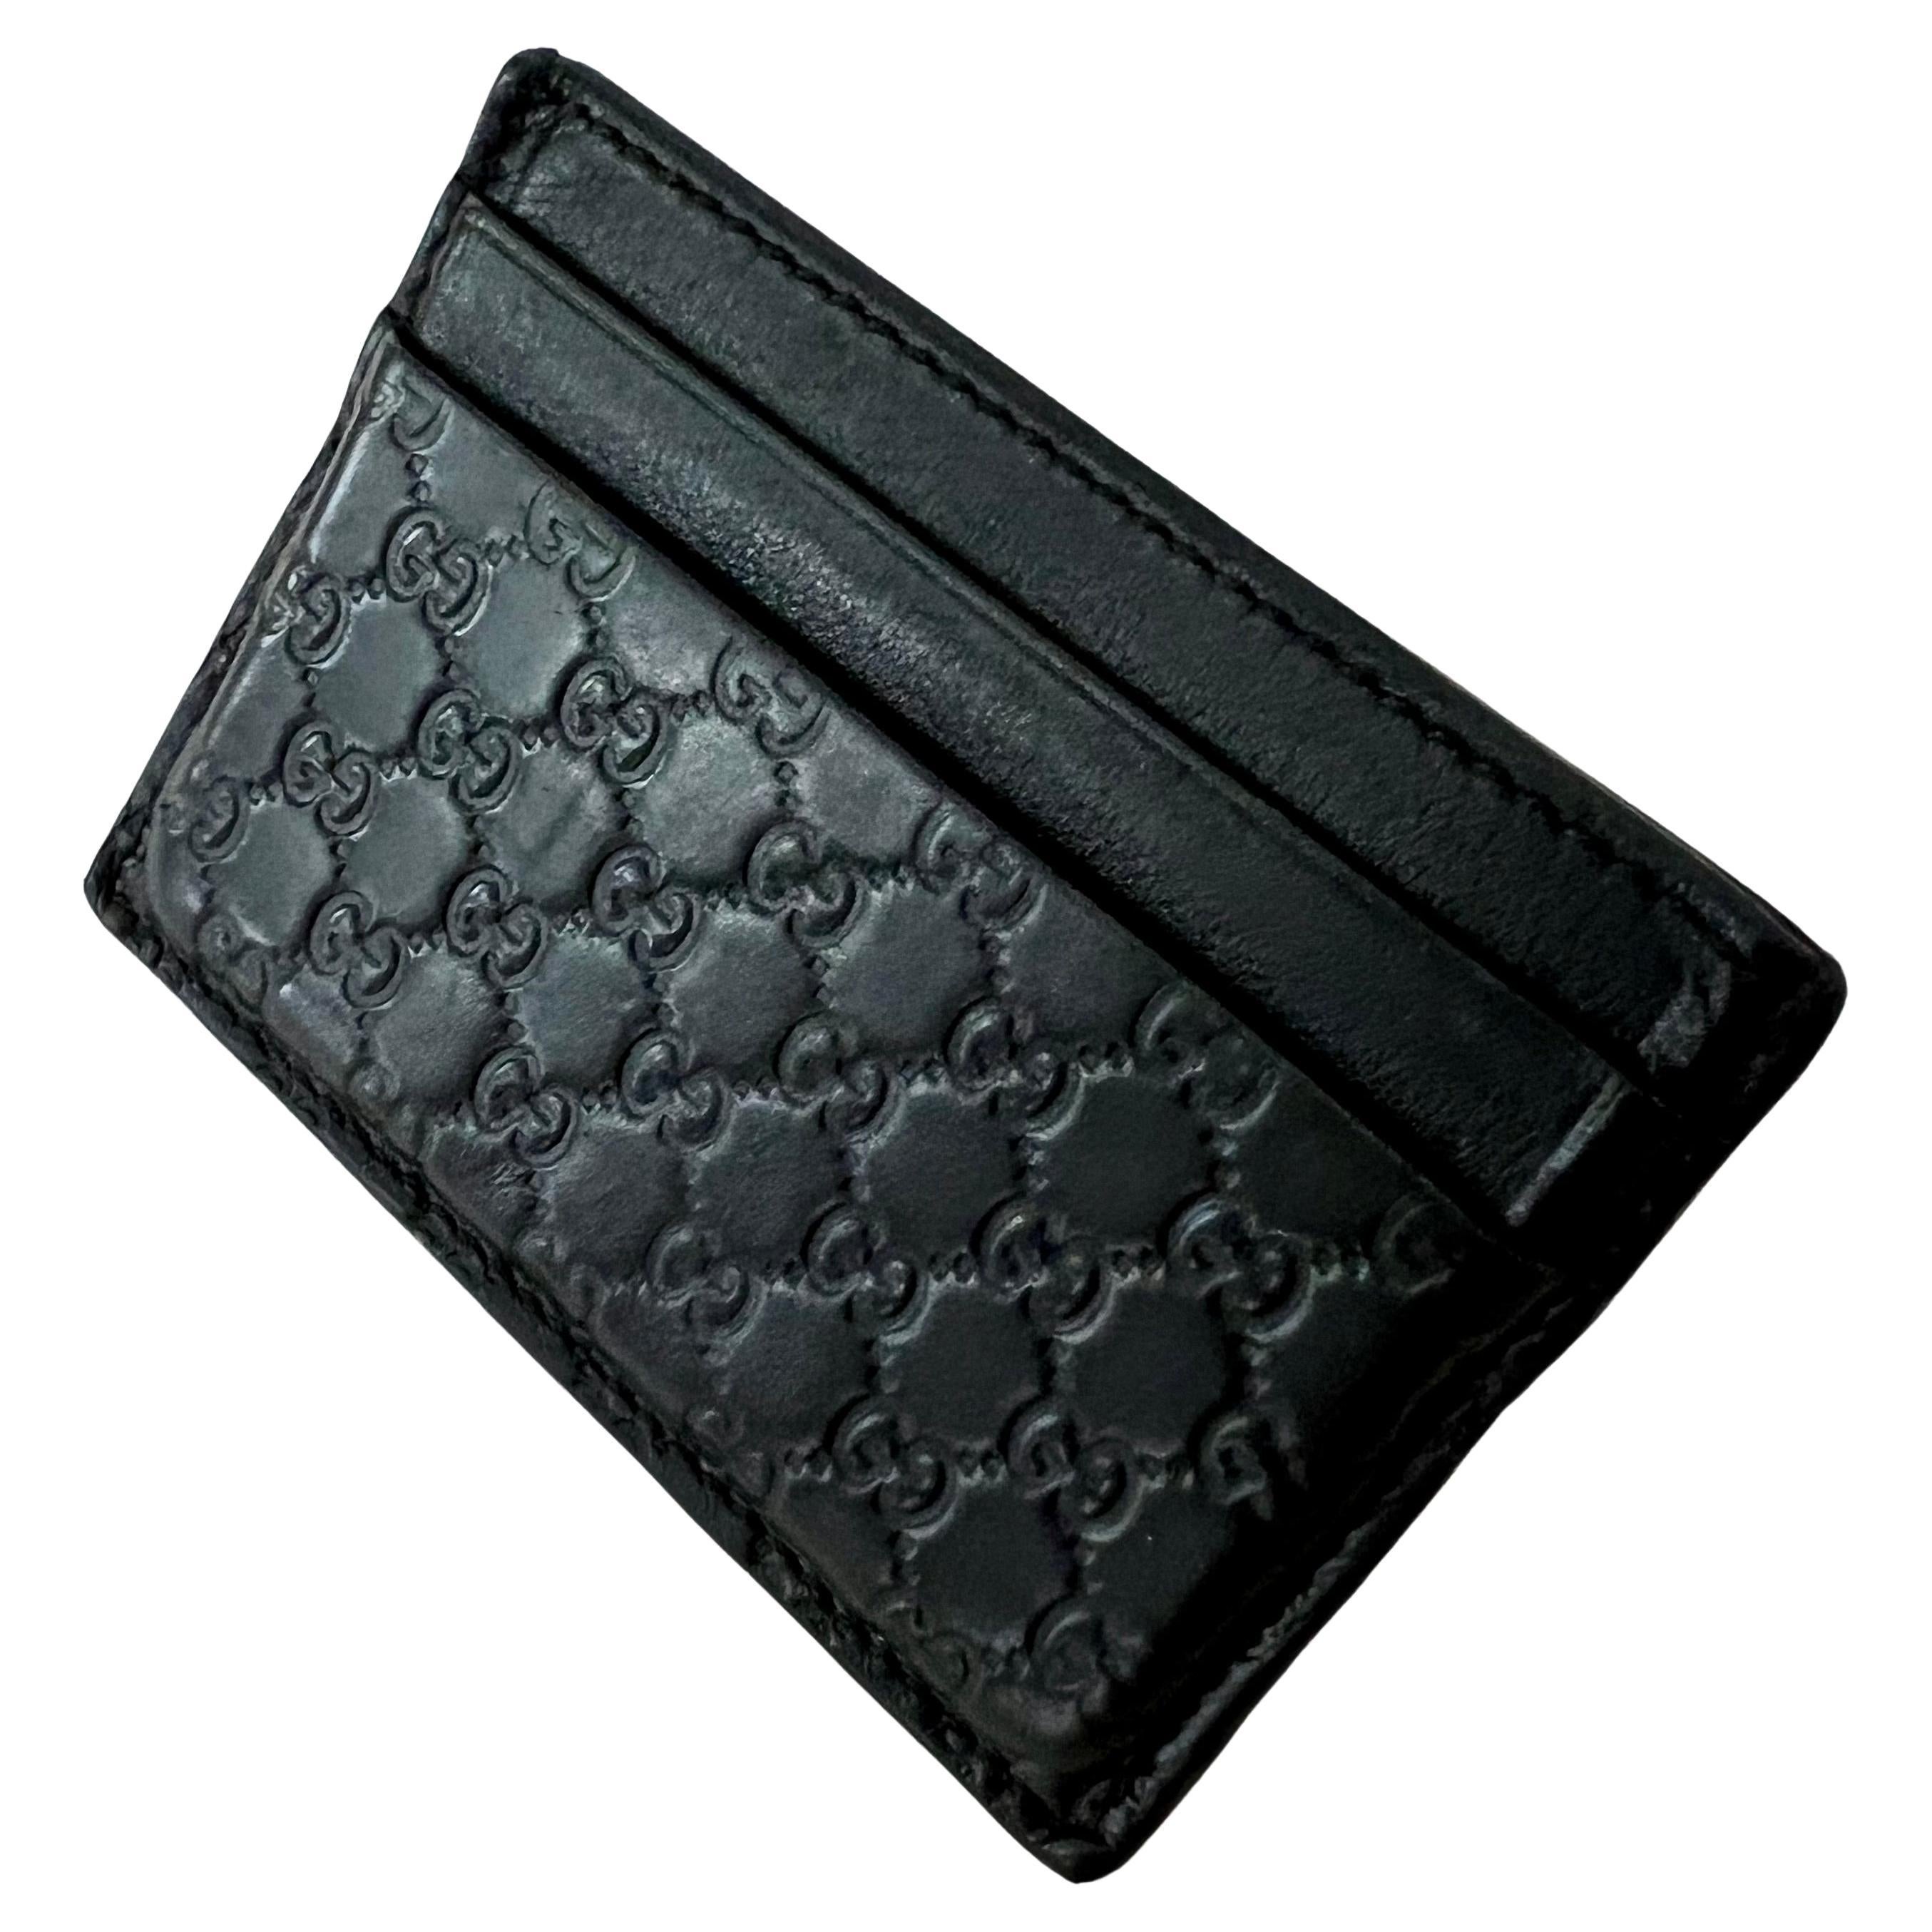 Eine schöne und neue Kreditkarte Brieftasche, die leicht von4-8 Karten und Bargeld halten kann... klein, kompakt und leicht zu tragen. ein schönes neues Stück.